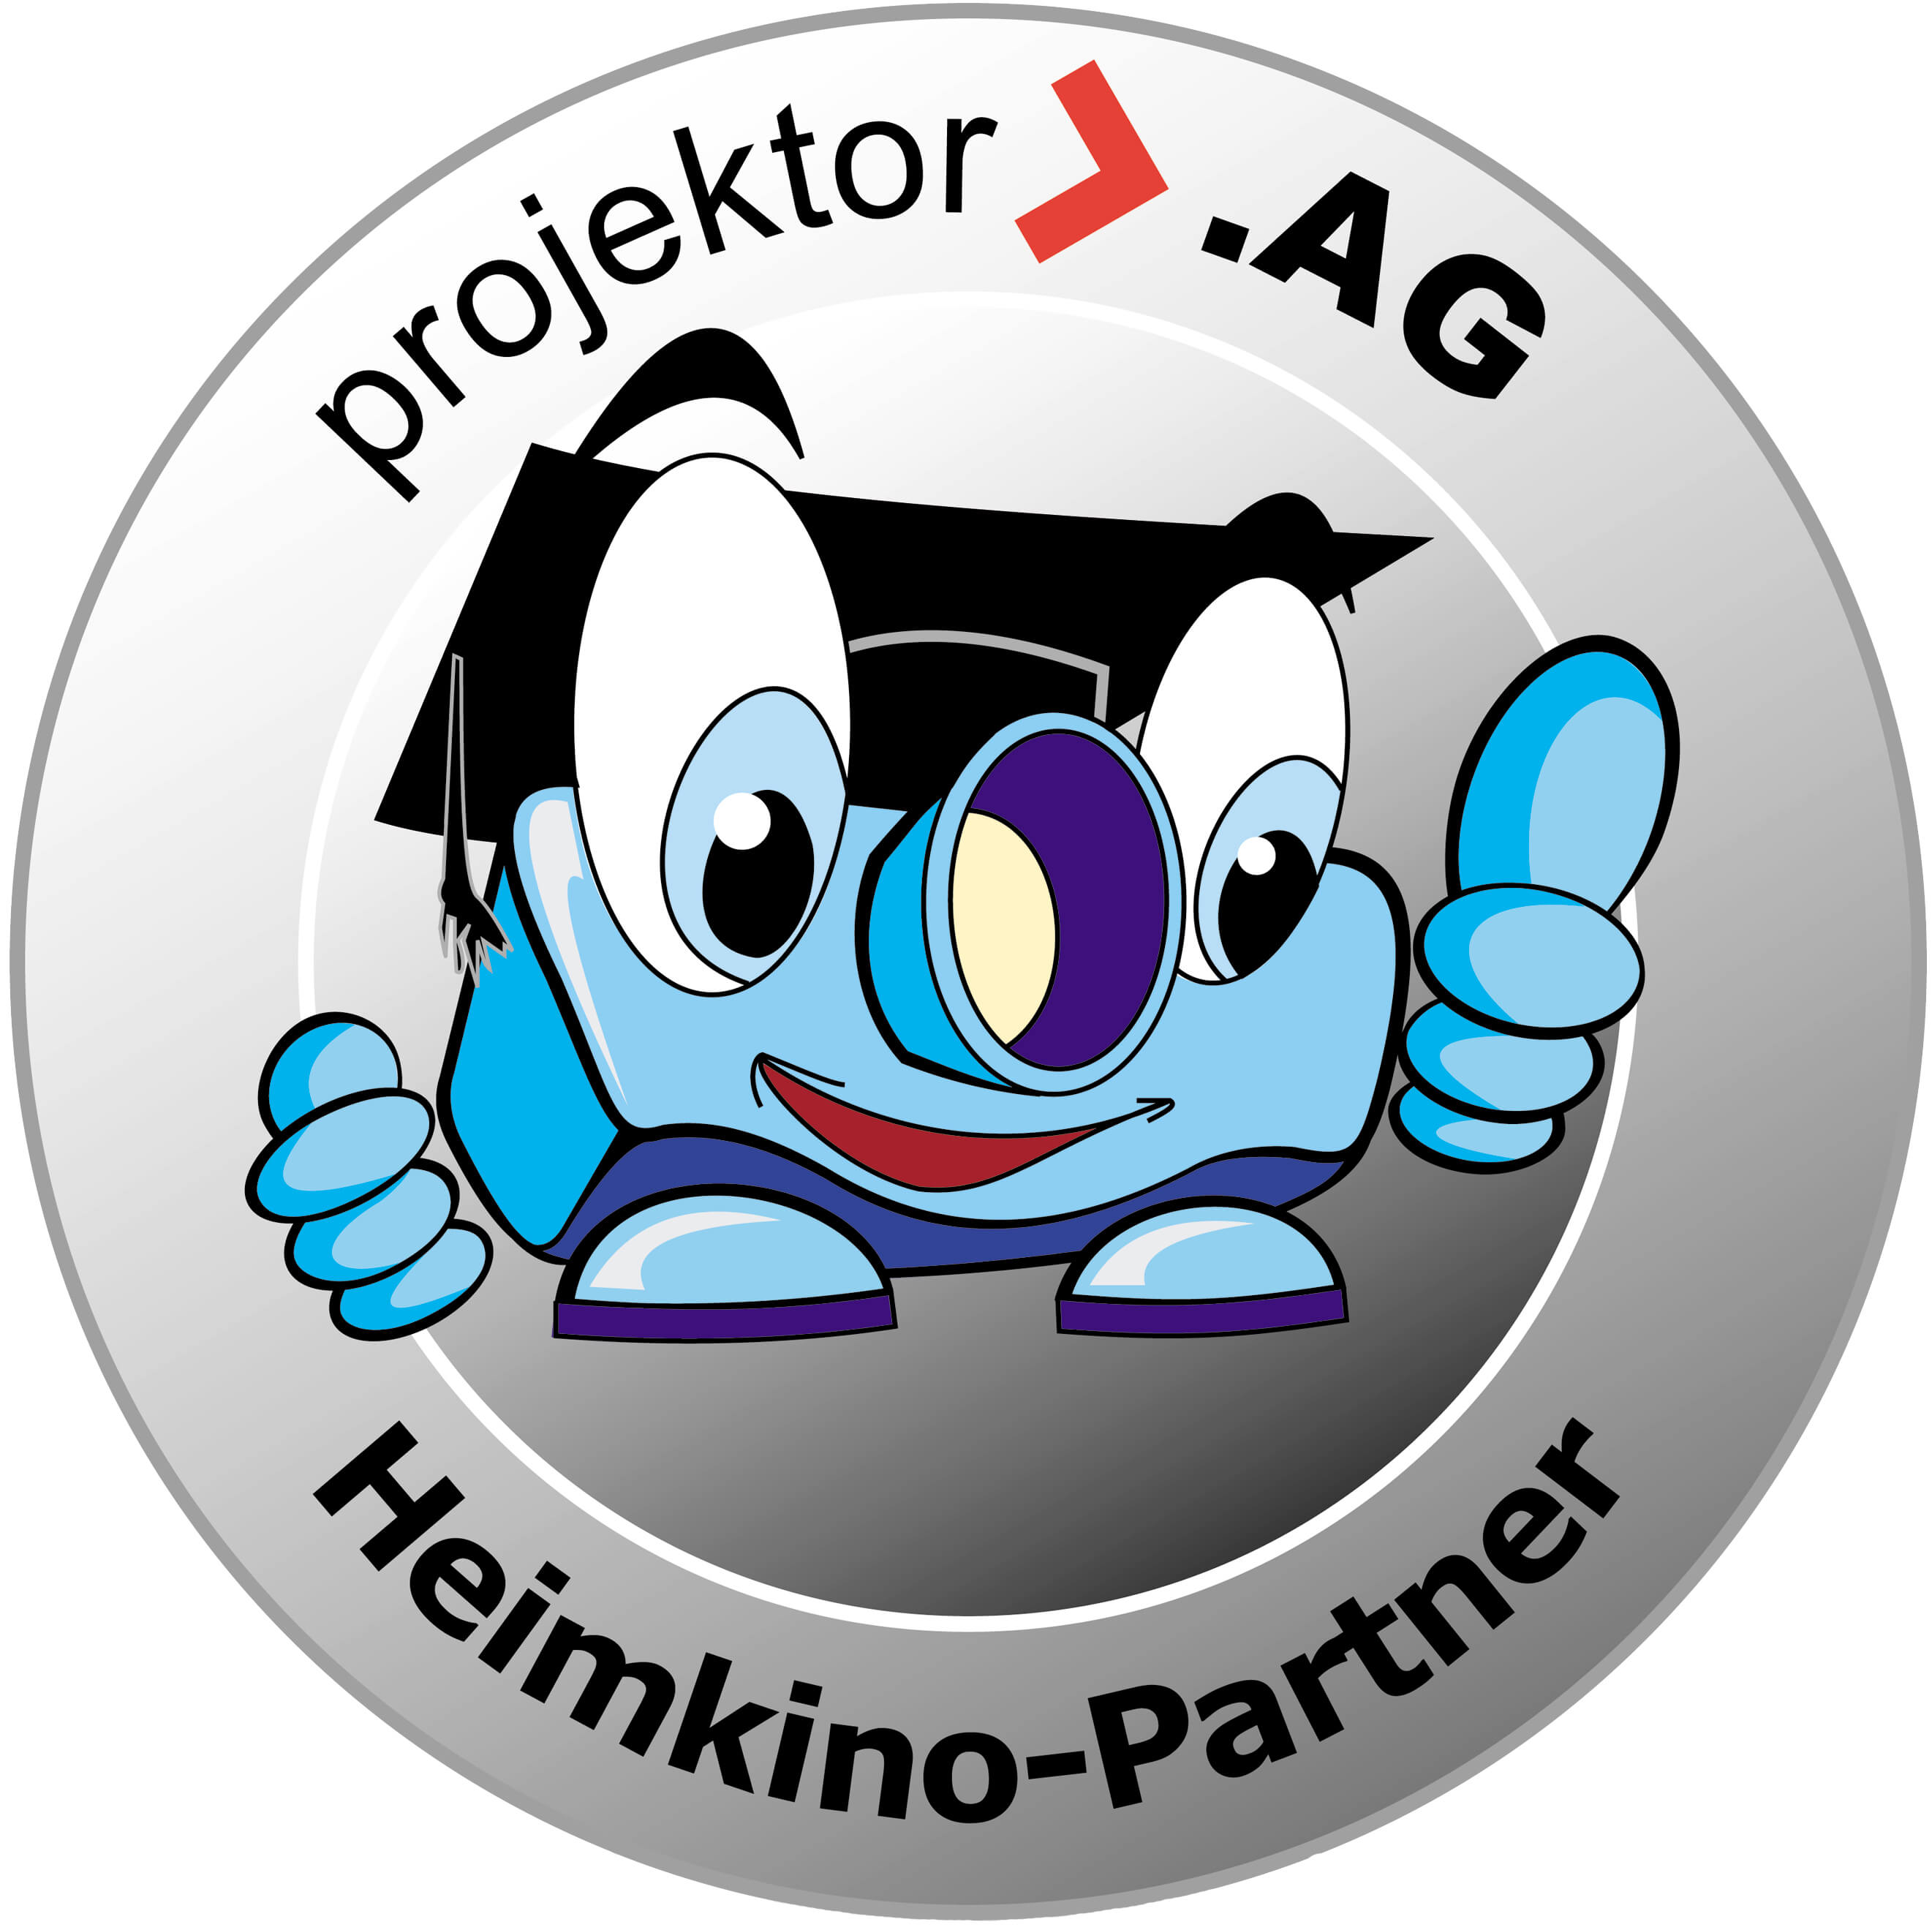 siegel - Projektor AG begrüßt neuen Heimkino-Partner